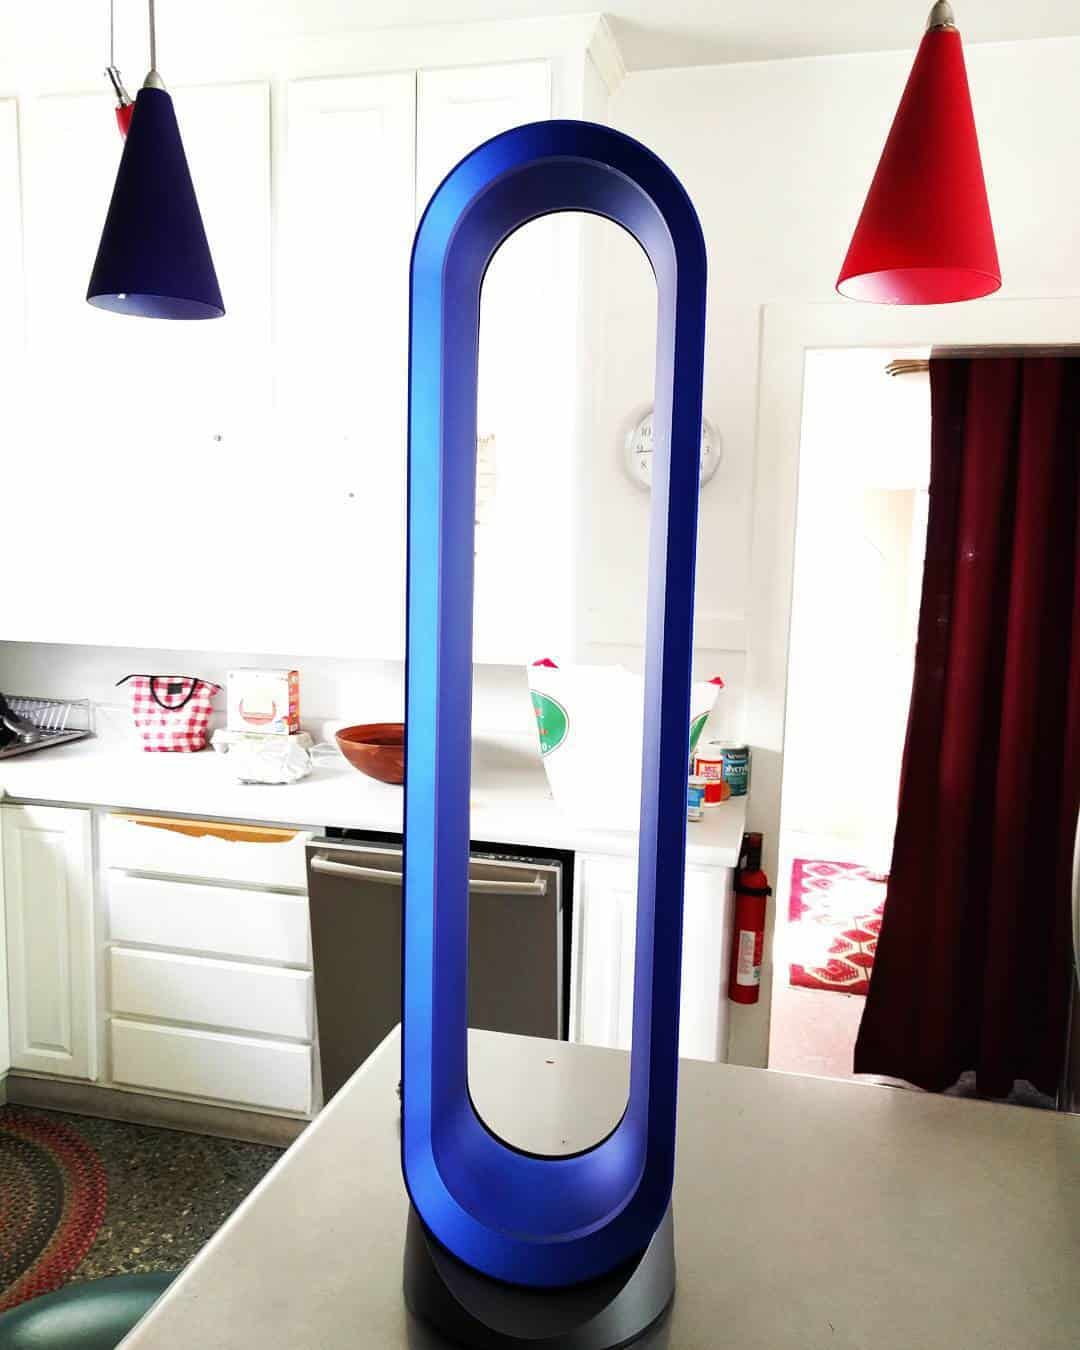 Blue Dyson fan in a living room #towerFan #fan #fans #whatfans #dyson #homeDecor #interiorDesign #livingRoom